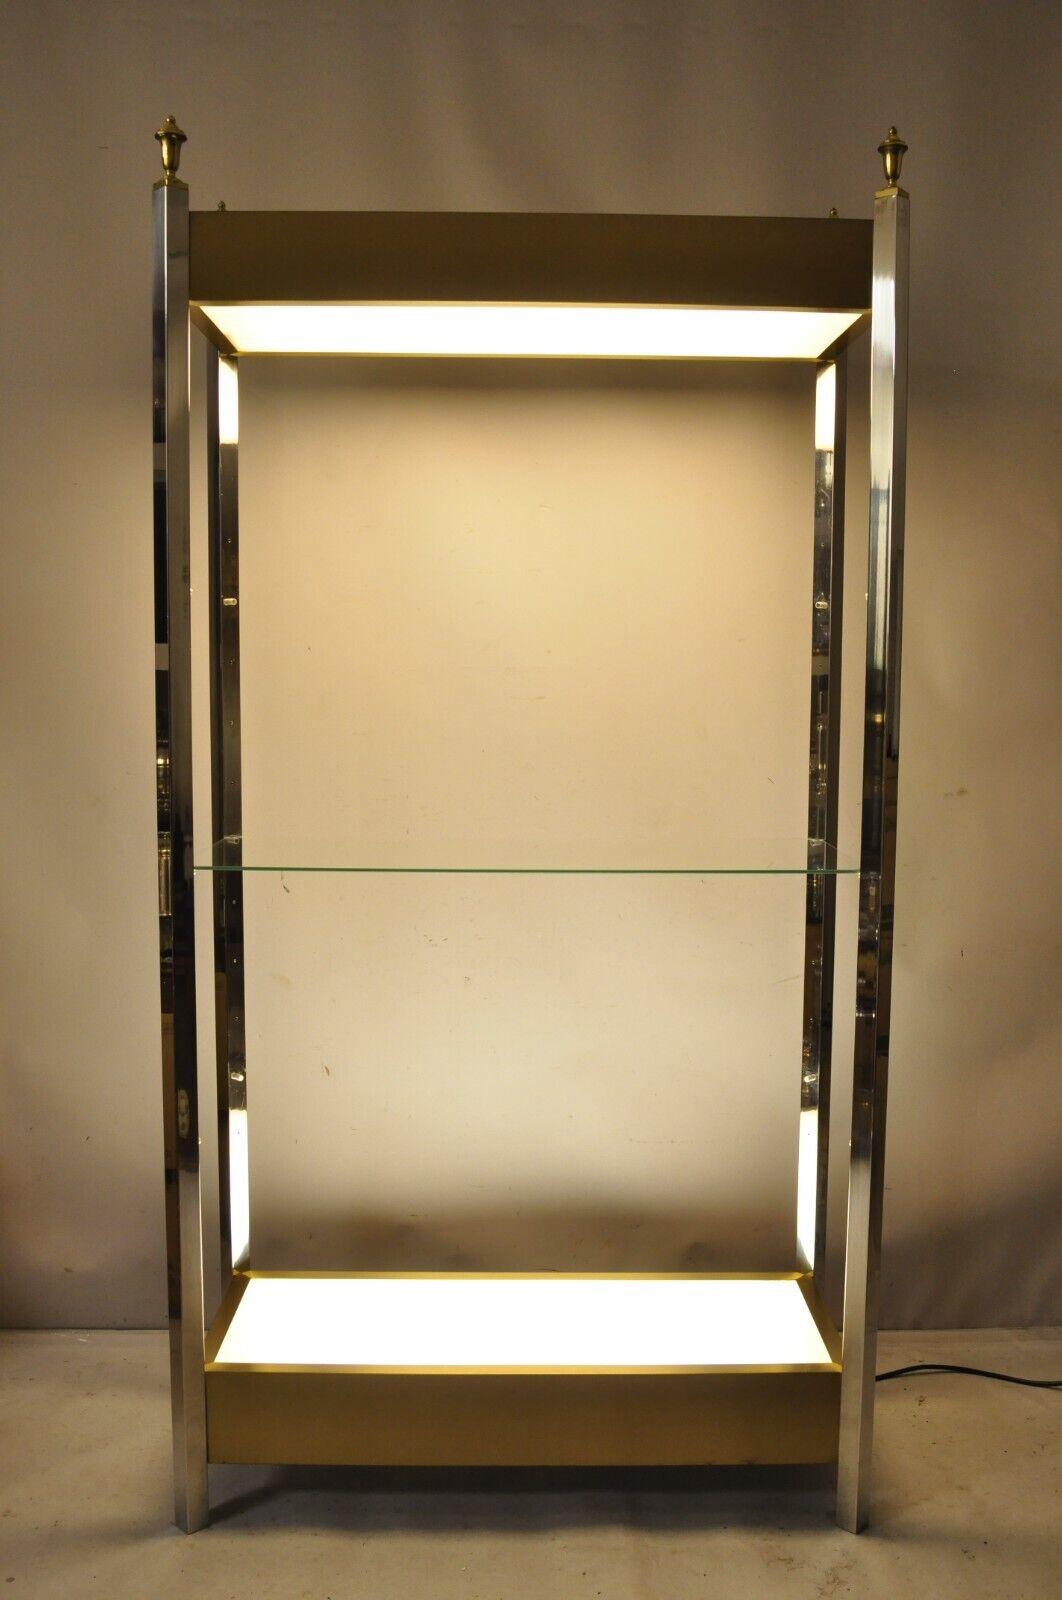 Vintage Illuminated Chrome and Brass Light Up Display Shelf Curio Etagere. Der Artikel verfügt über einen polierten verchromten Metallrahmen, Akzente aus gebürstetem Messing und Messing-Finials, Beleuchtung oben und unten (Schalter für die